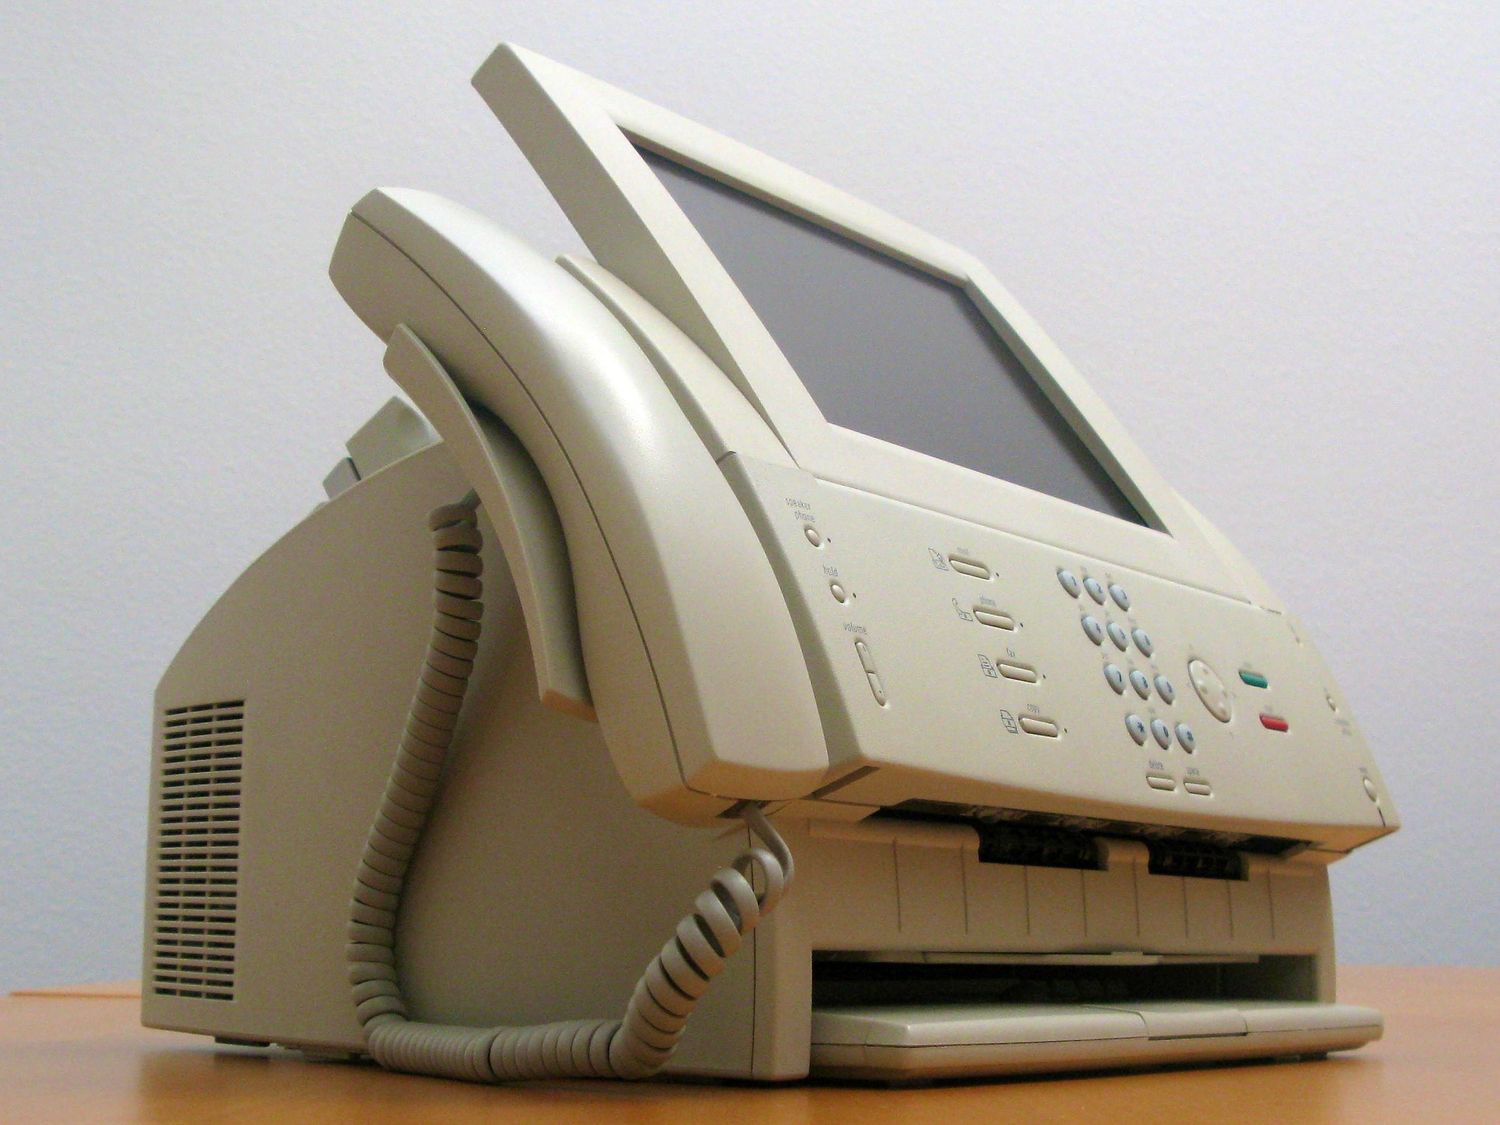 Paladin kết hợp điện thoại, máy fax và máy tính (Ảnh: Internet)